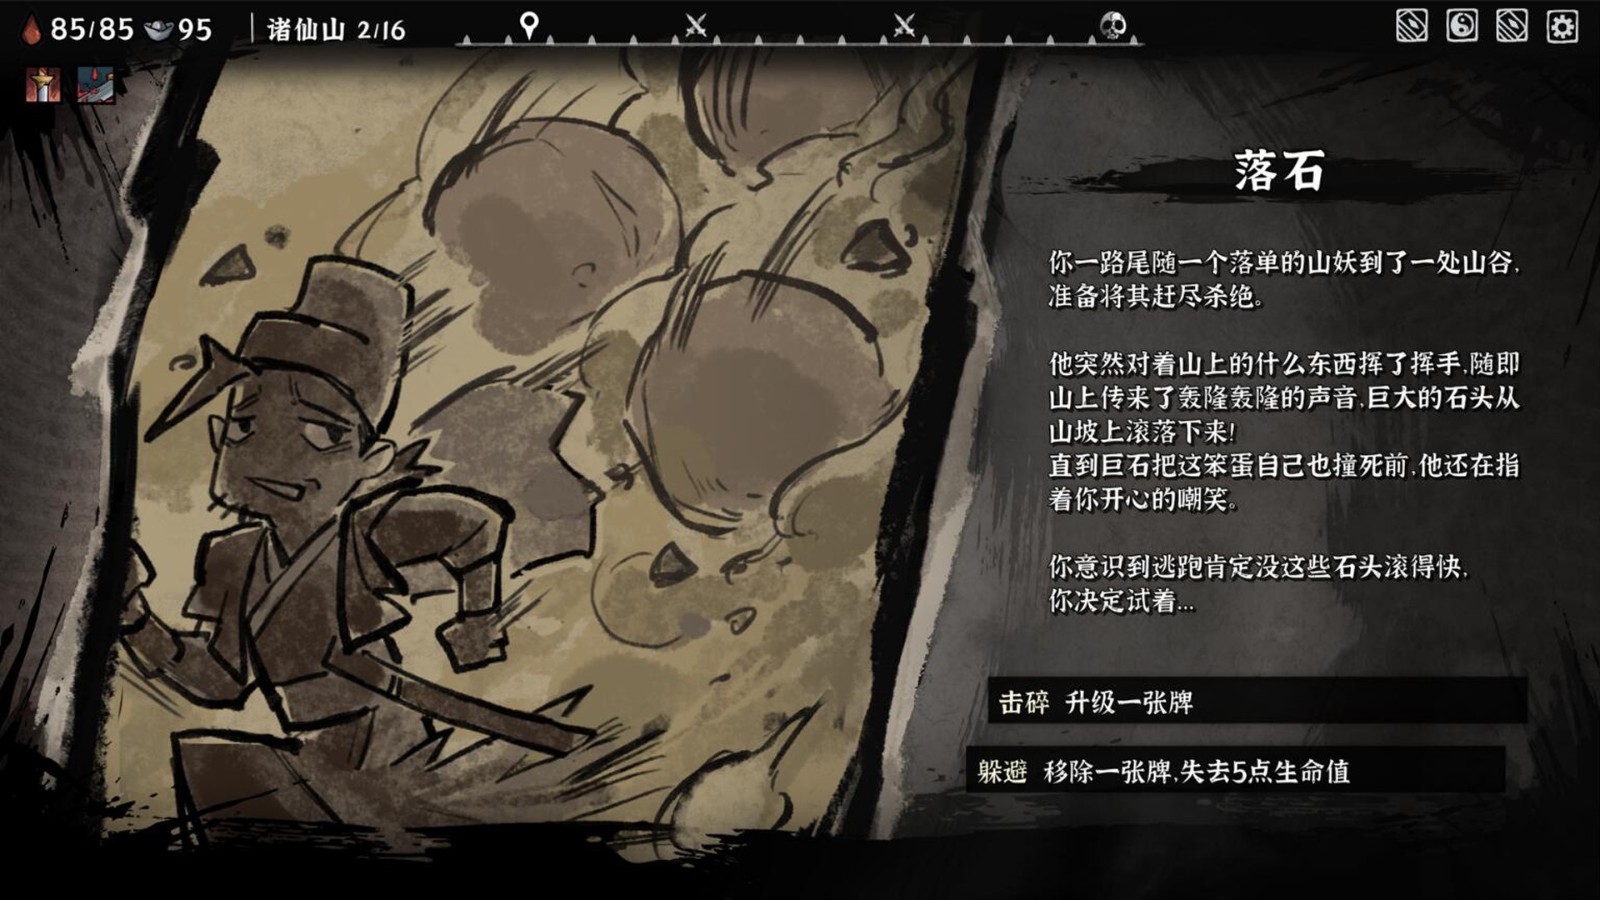 国风卡组构建肉鸽游戏《降妖散记》Steam页面上线 预计11月16日发售